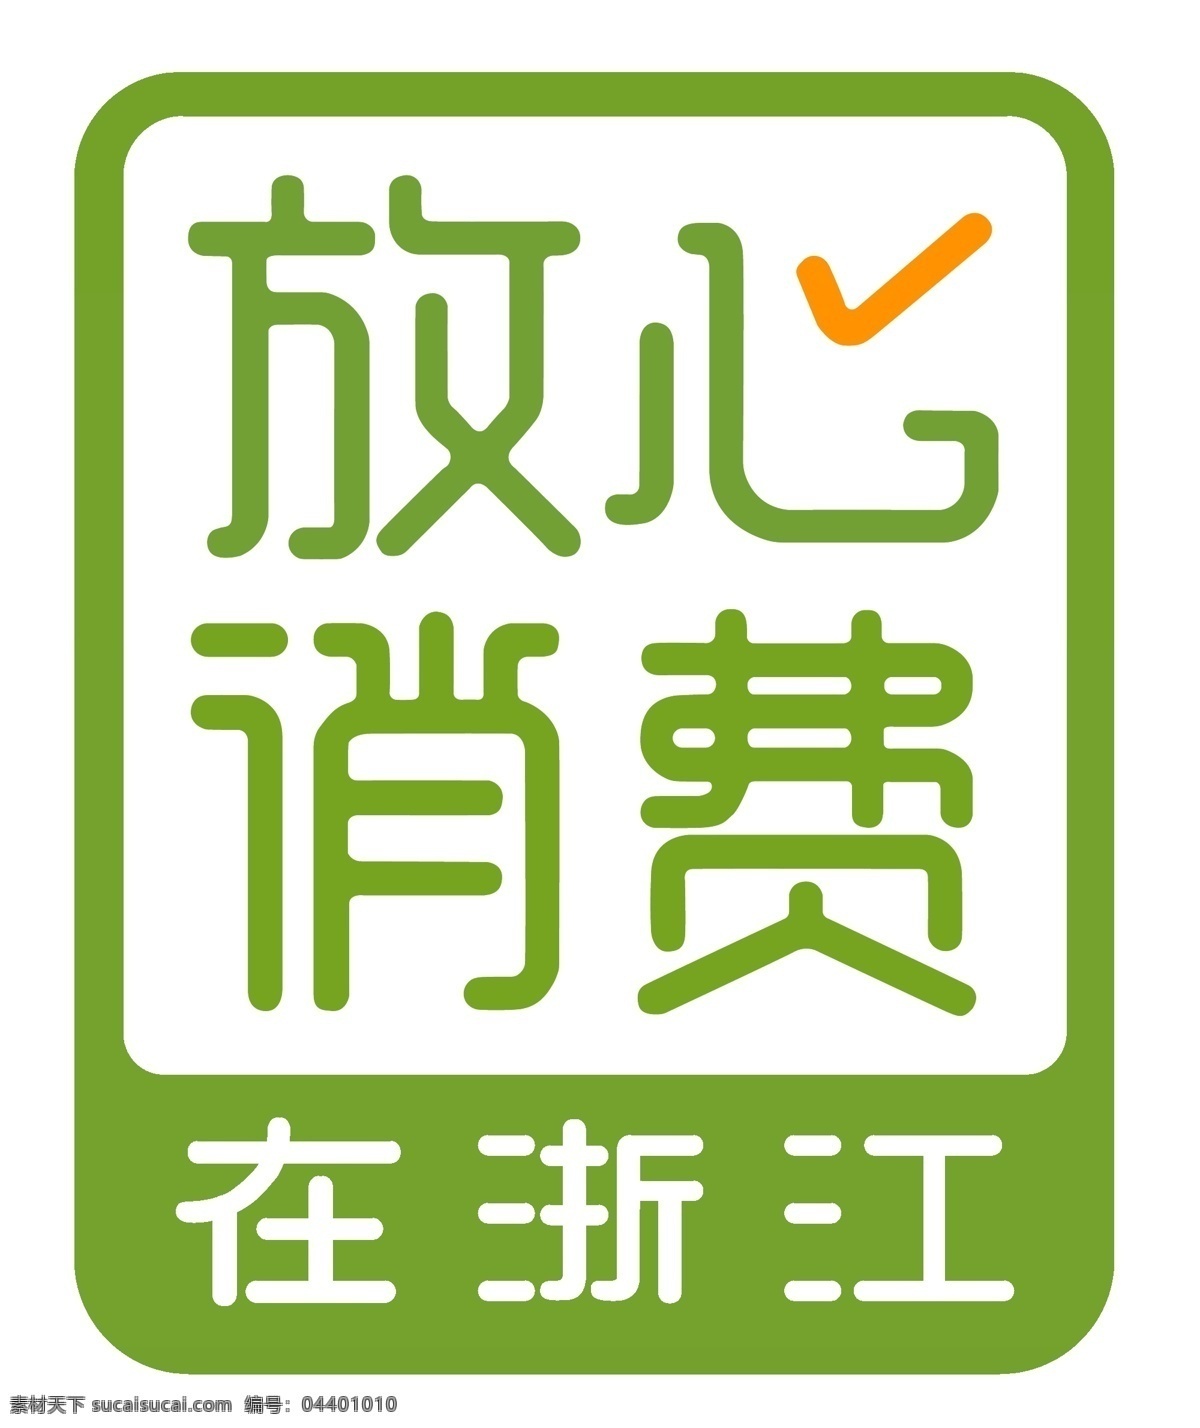 放心消费图片 放心消费 在浙江 logo 图标 消费者 标志图标 公共标识标志